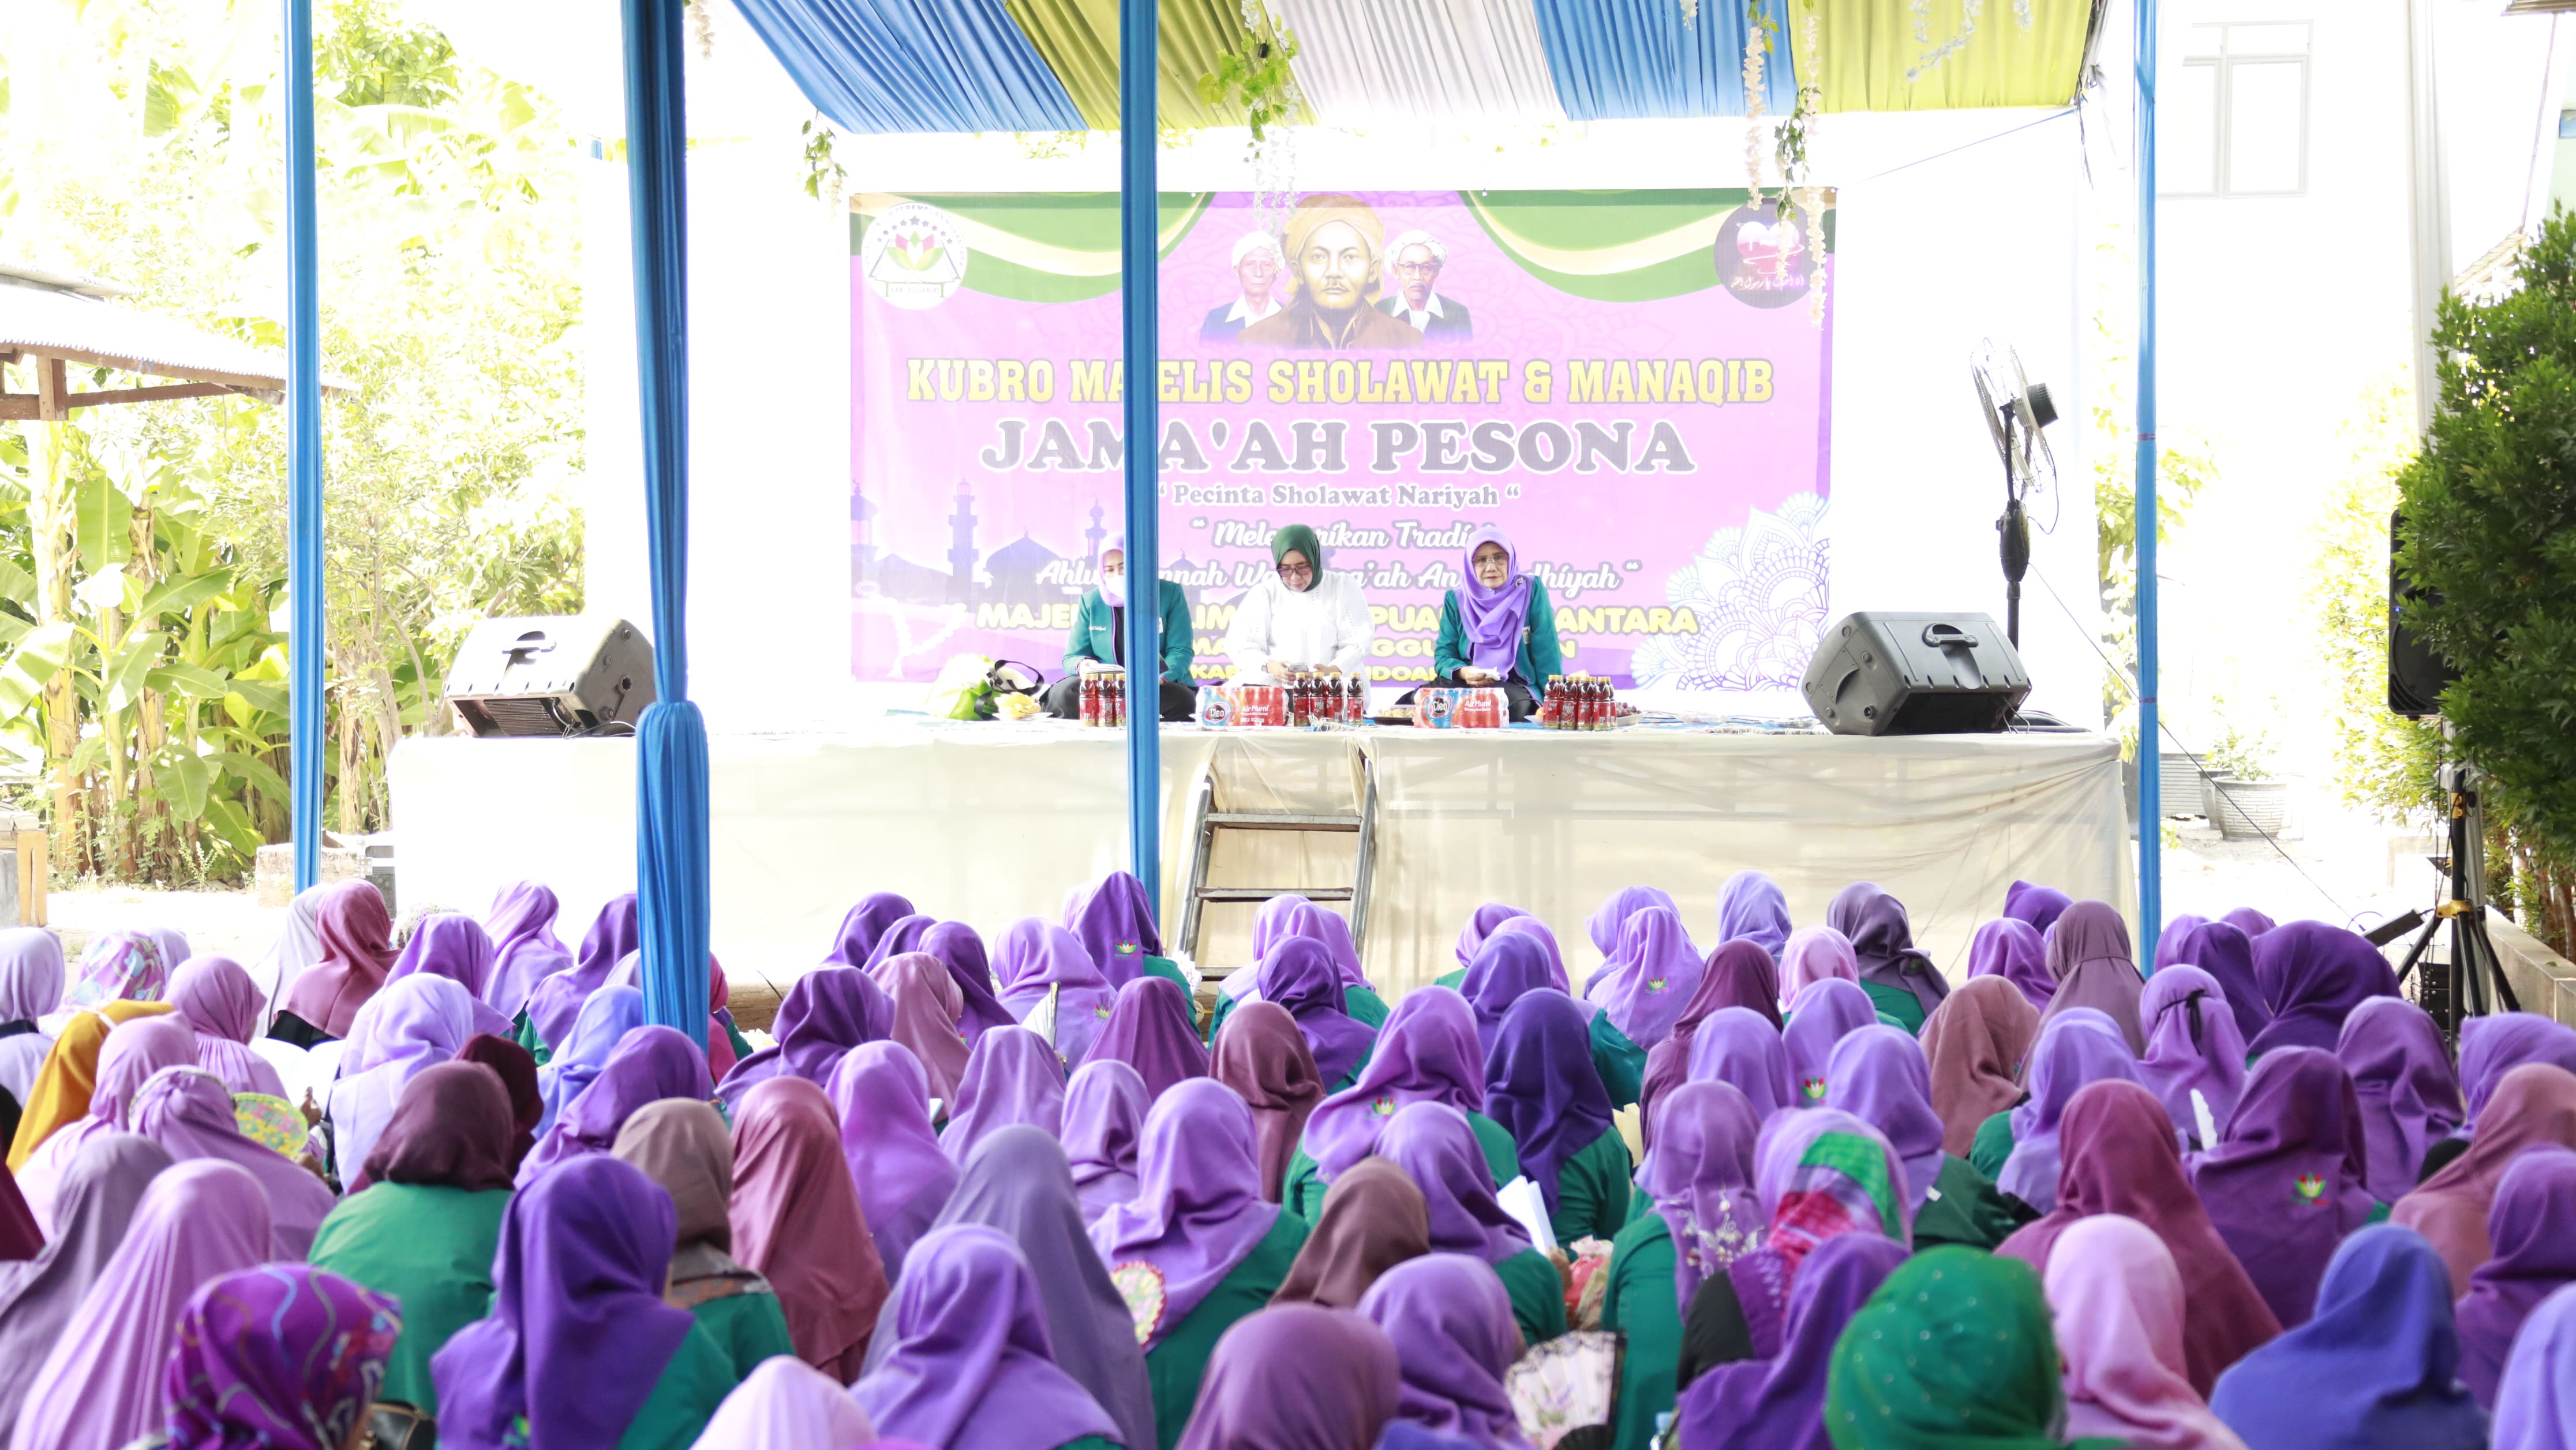 Wakil Ketua DPRD Provinsi Jawa Timur Hj. Anik Maslachah mengapresiasi semangat perempuan nusantara yang masih memiliki kepedulian terhadap shalawat